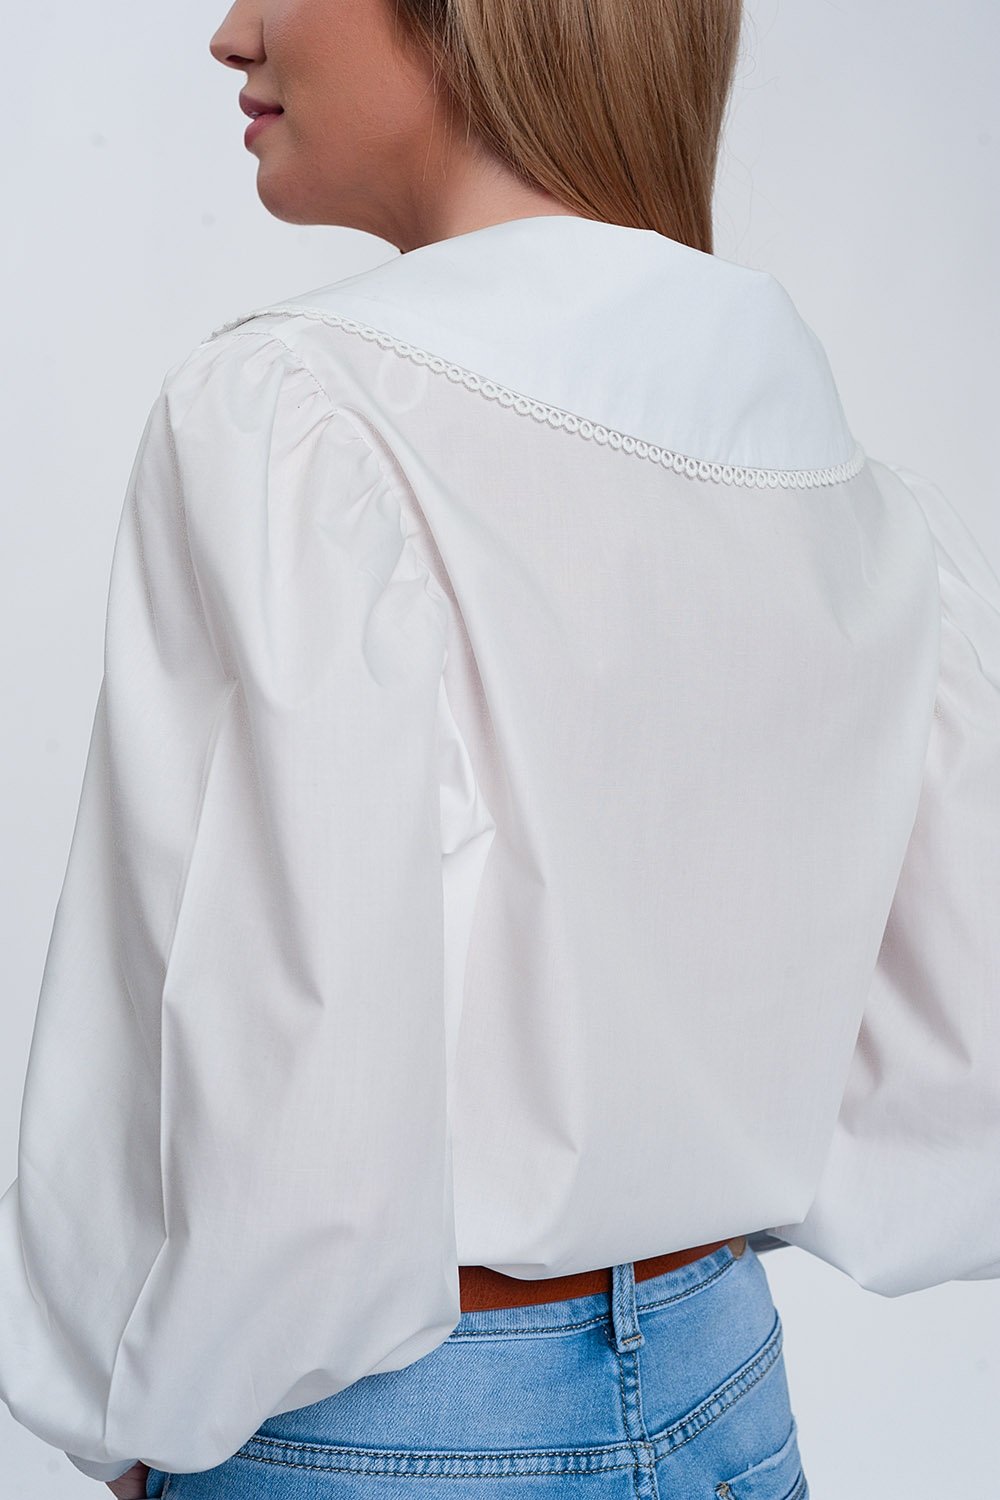 Hvid skjorte med krave